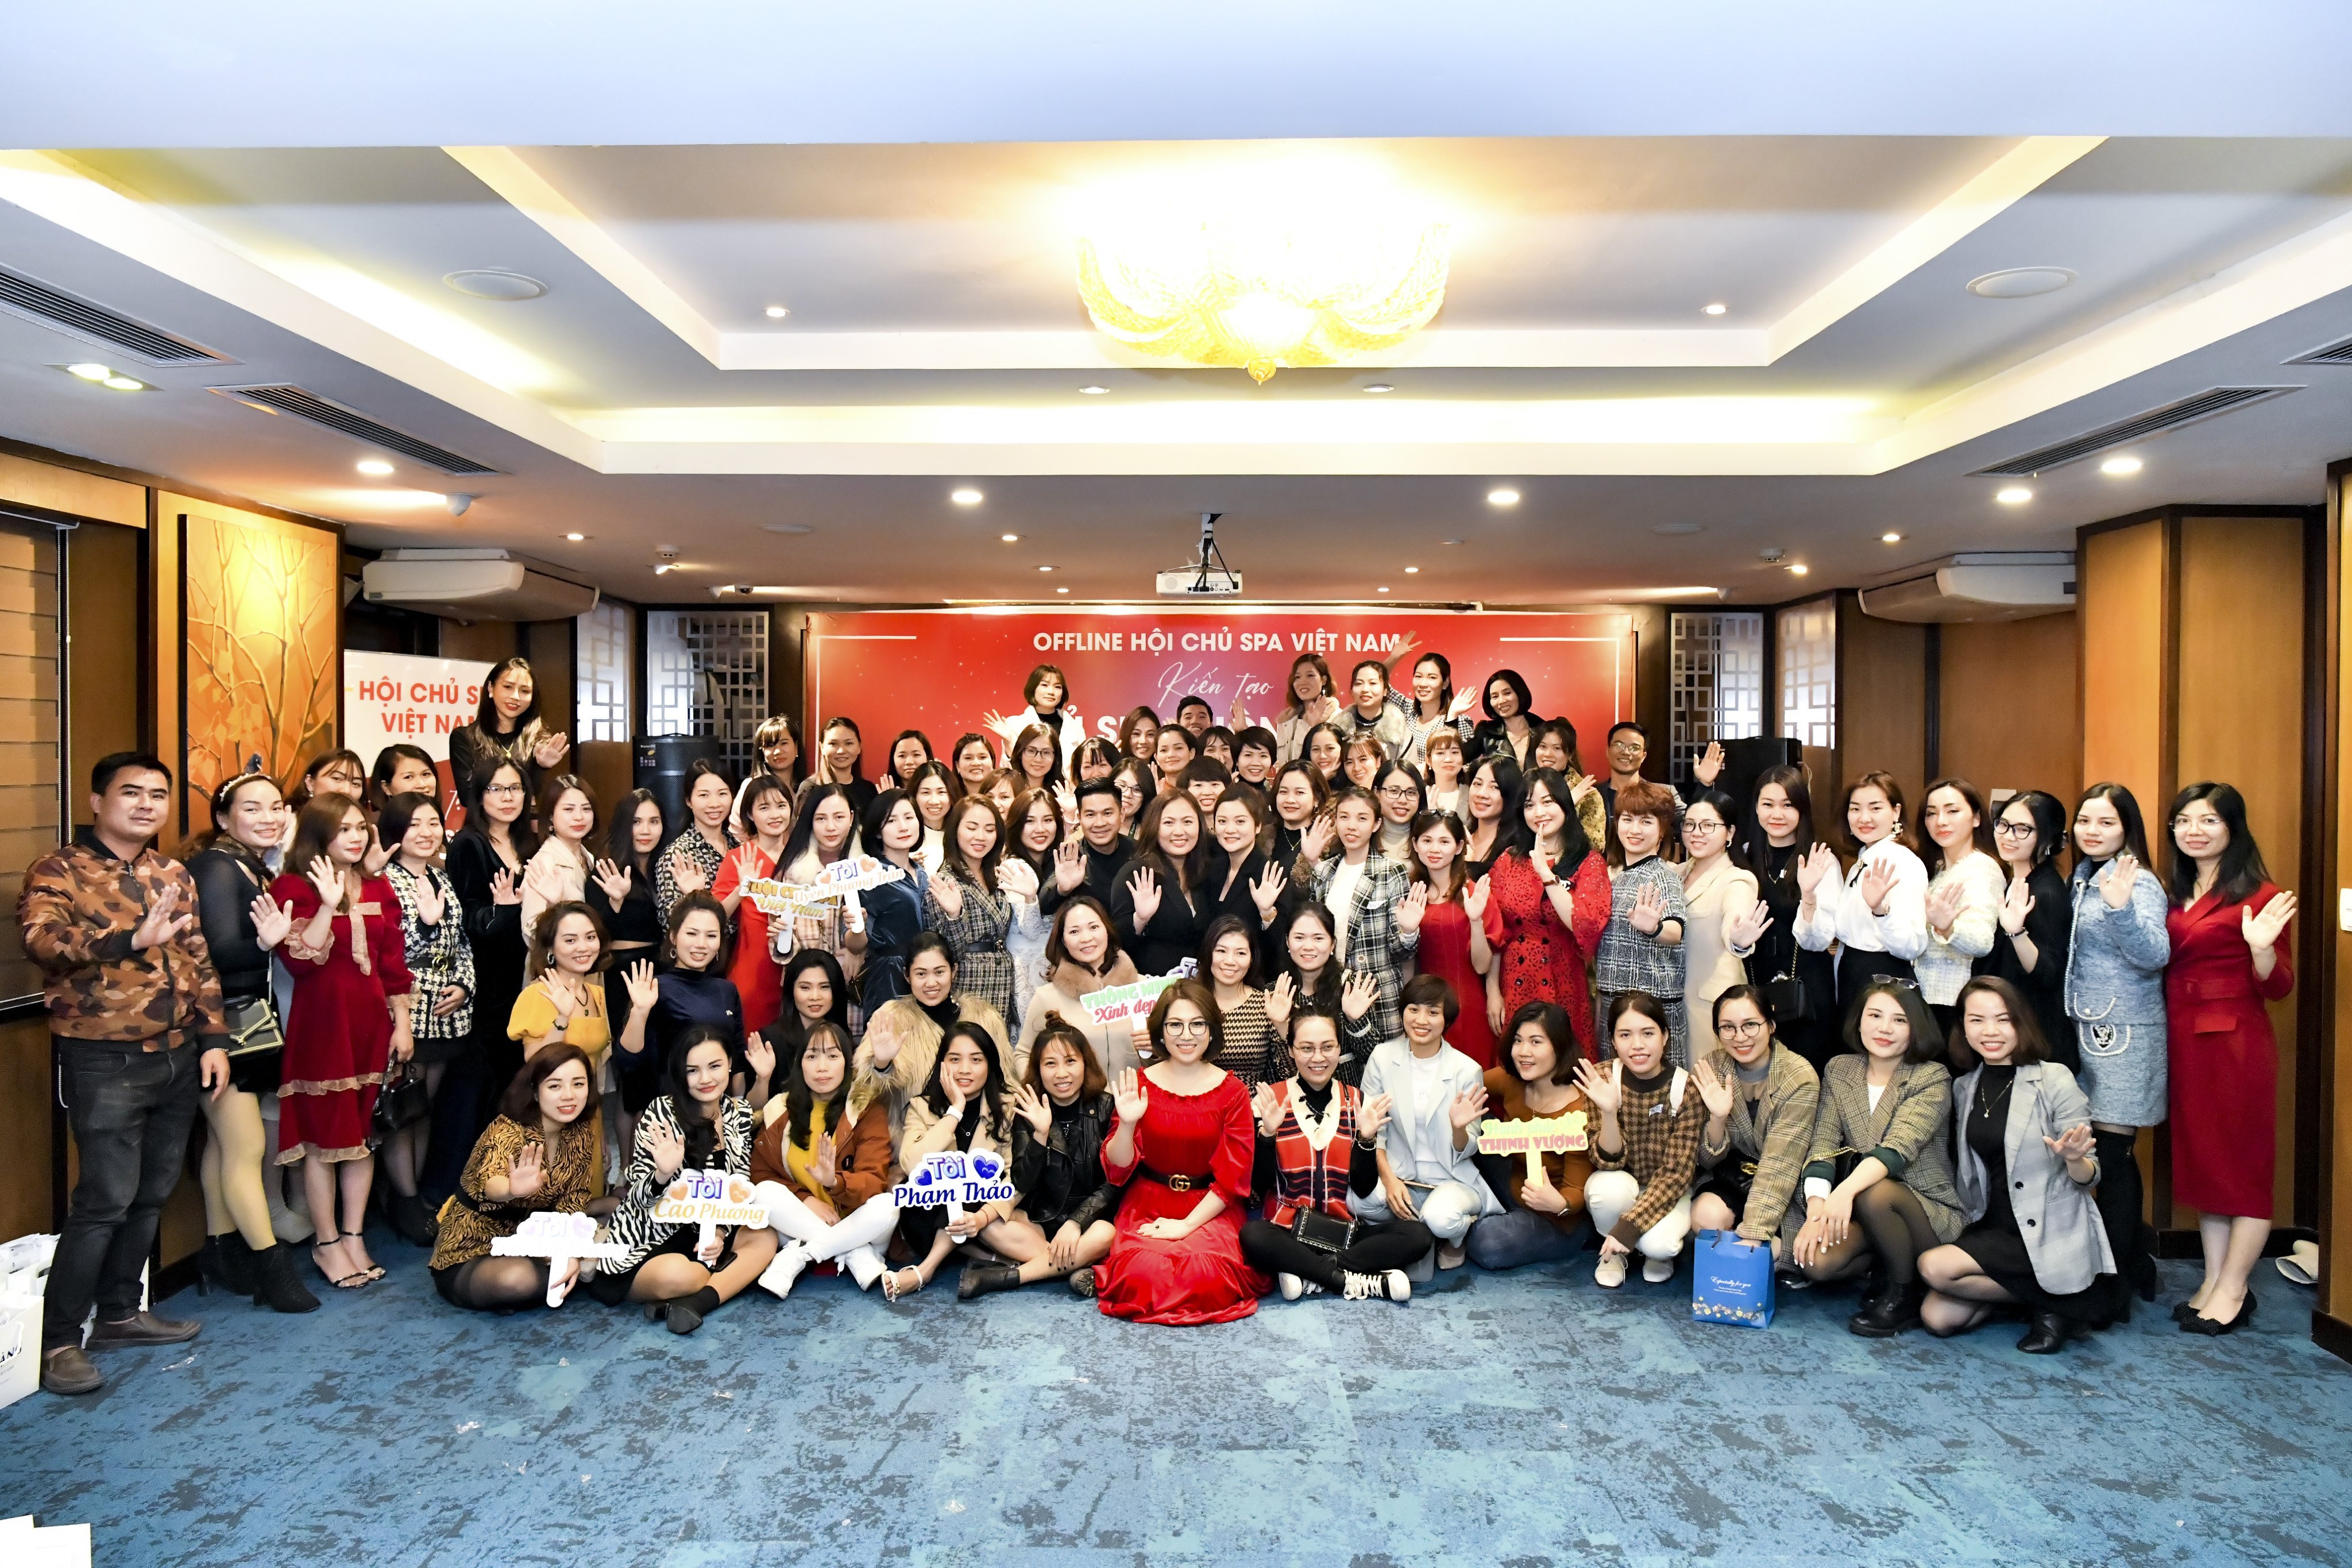 Đội ngũ BQT đầu tiên chụp ảnh lưu niệm cùng thành viên tại chương trình offline tại Hà Nội 28/12/2020